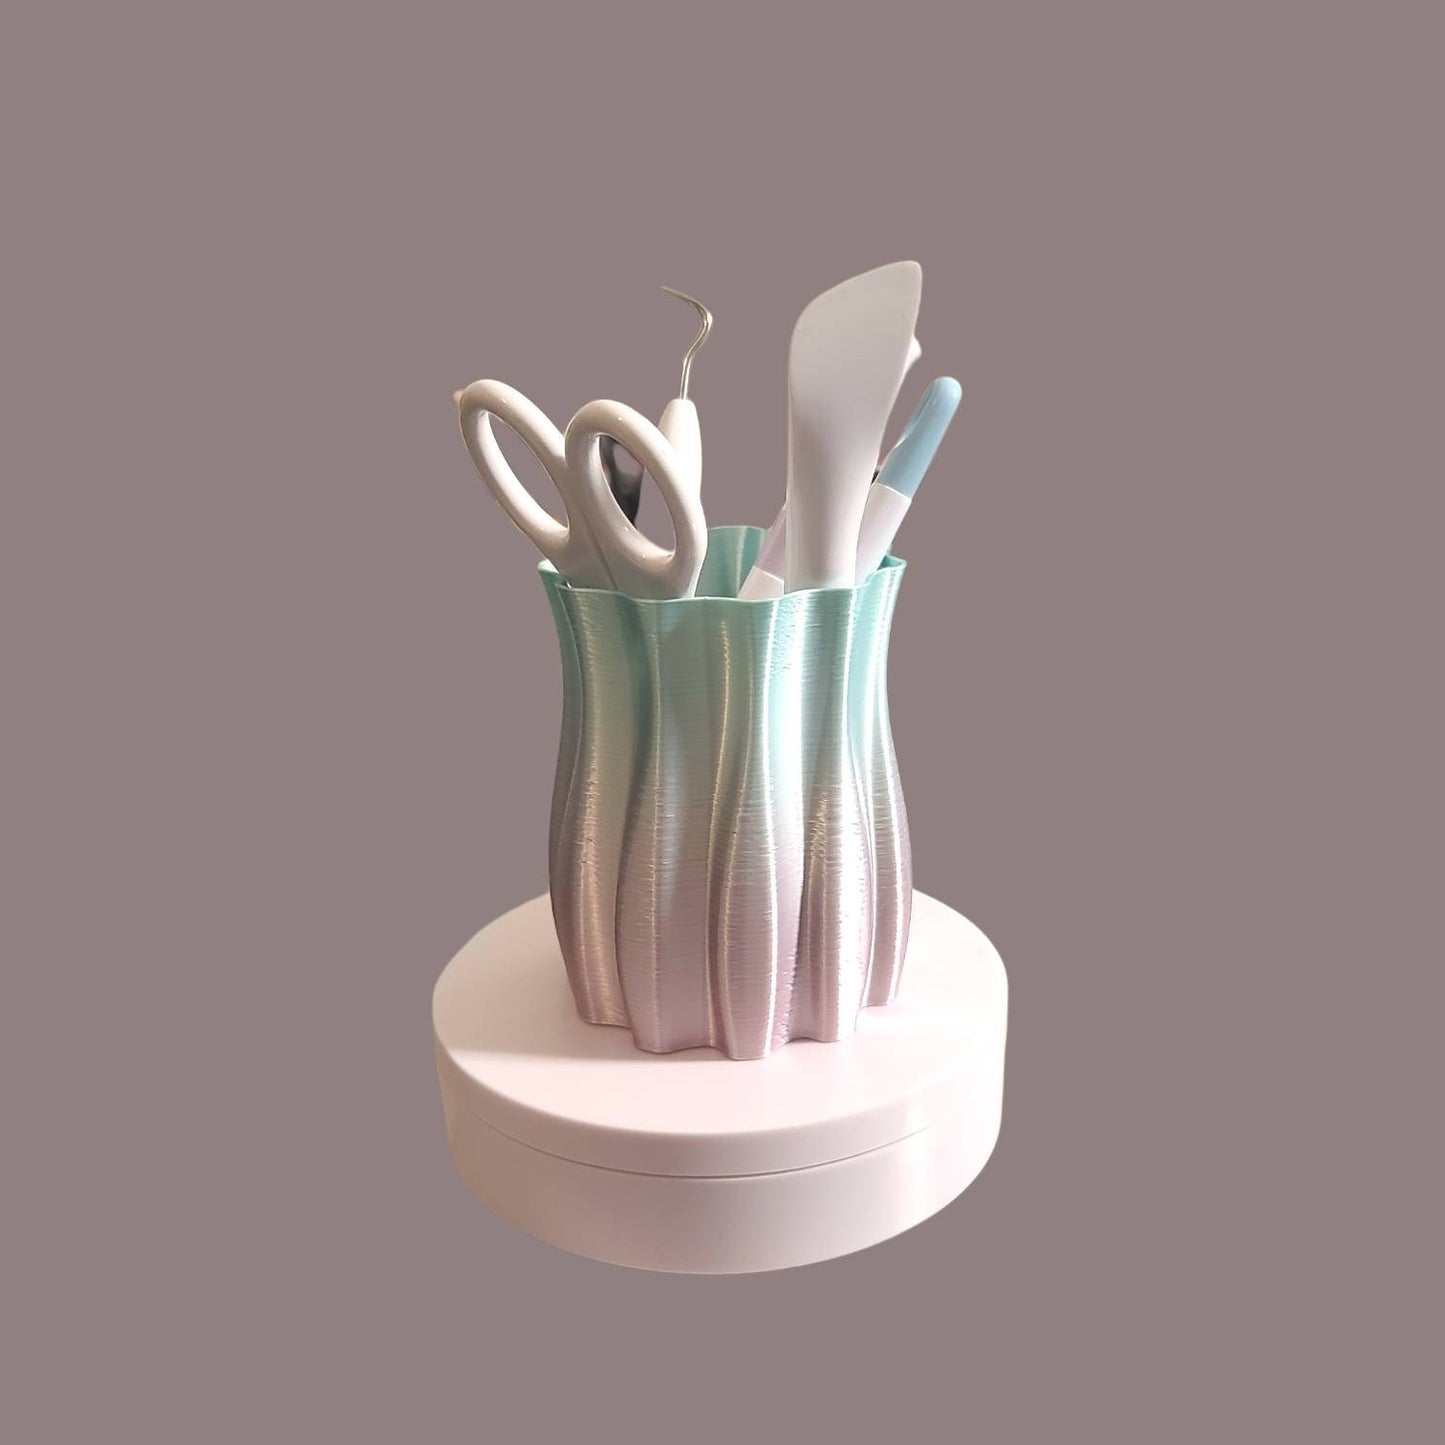 Vase, Pen holder, 3d print, Craft tool holder, short Low poly vase, Centerpiece